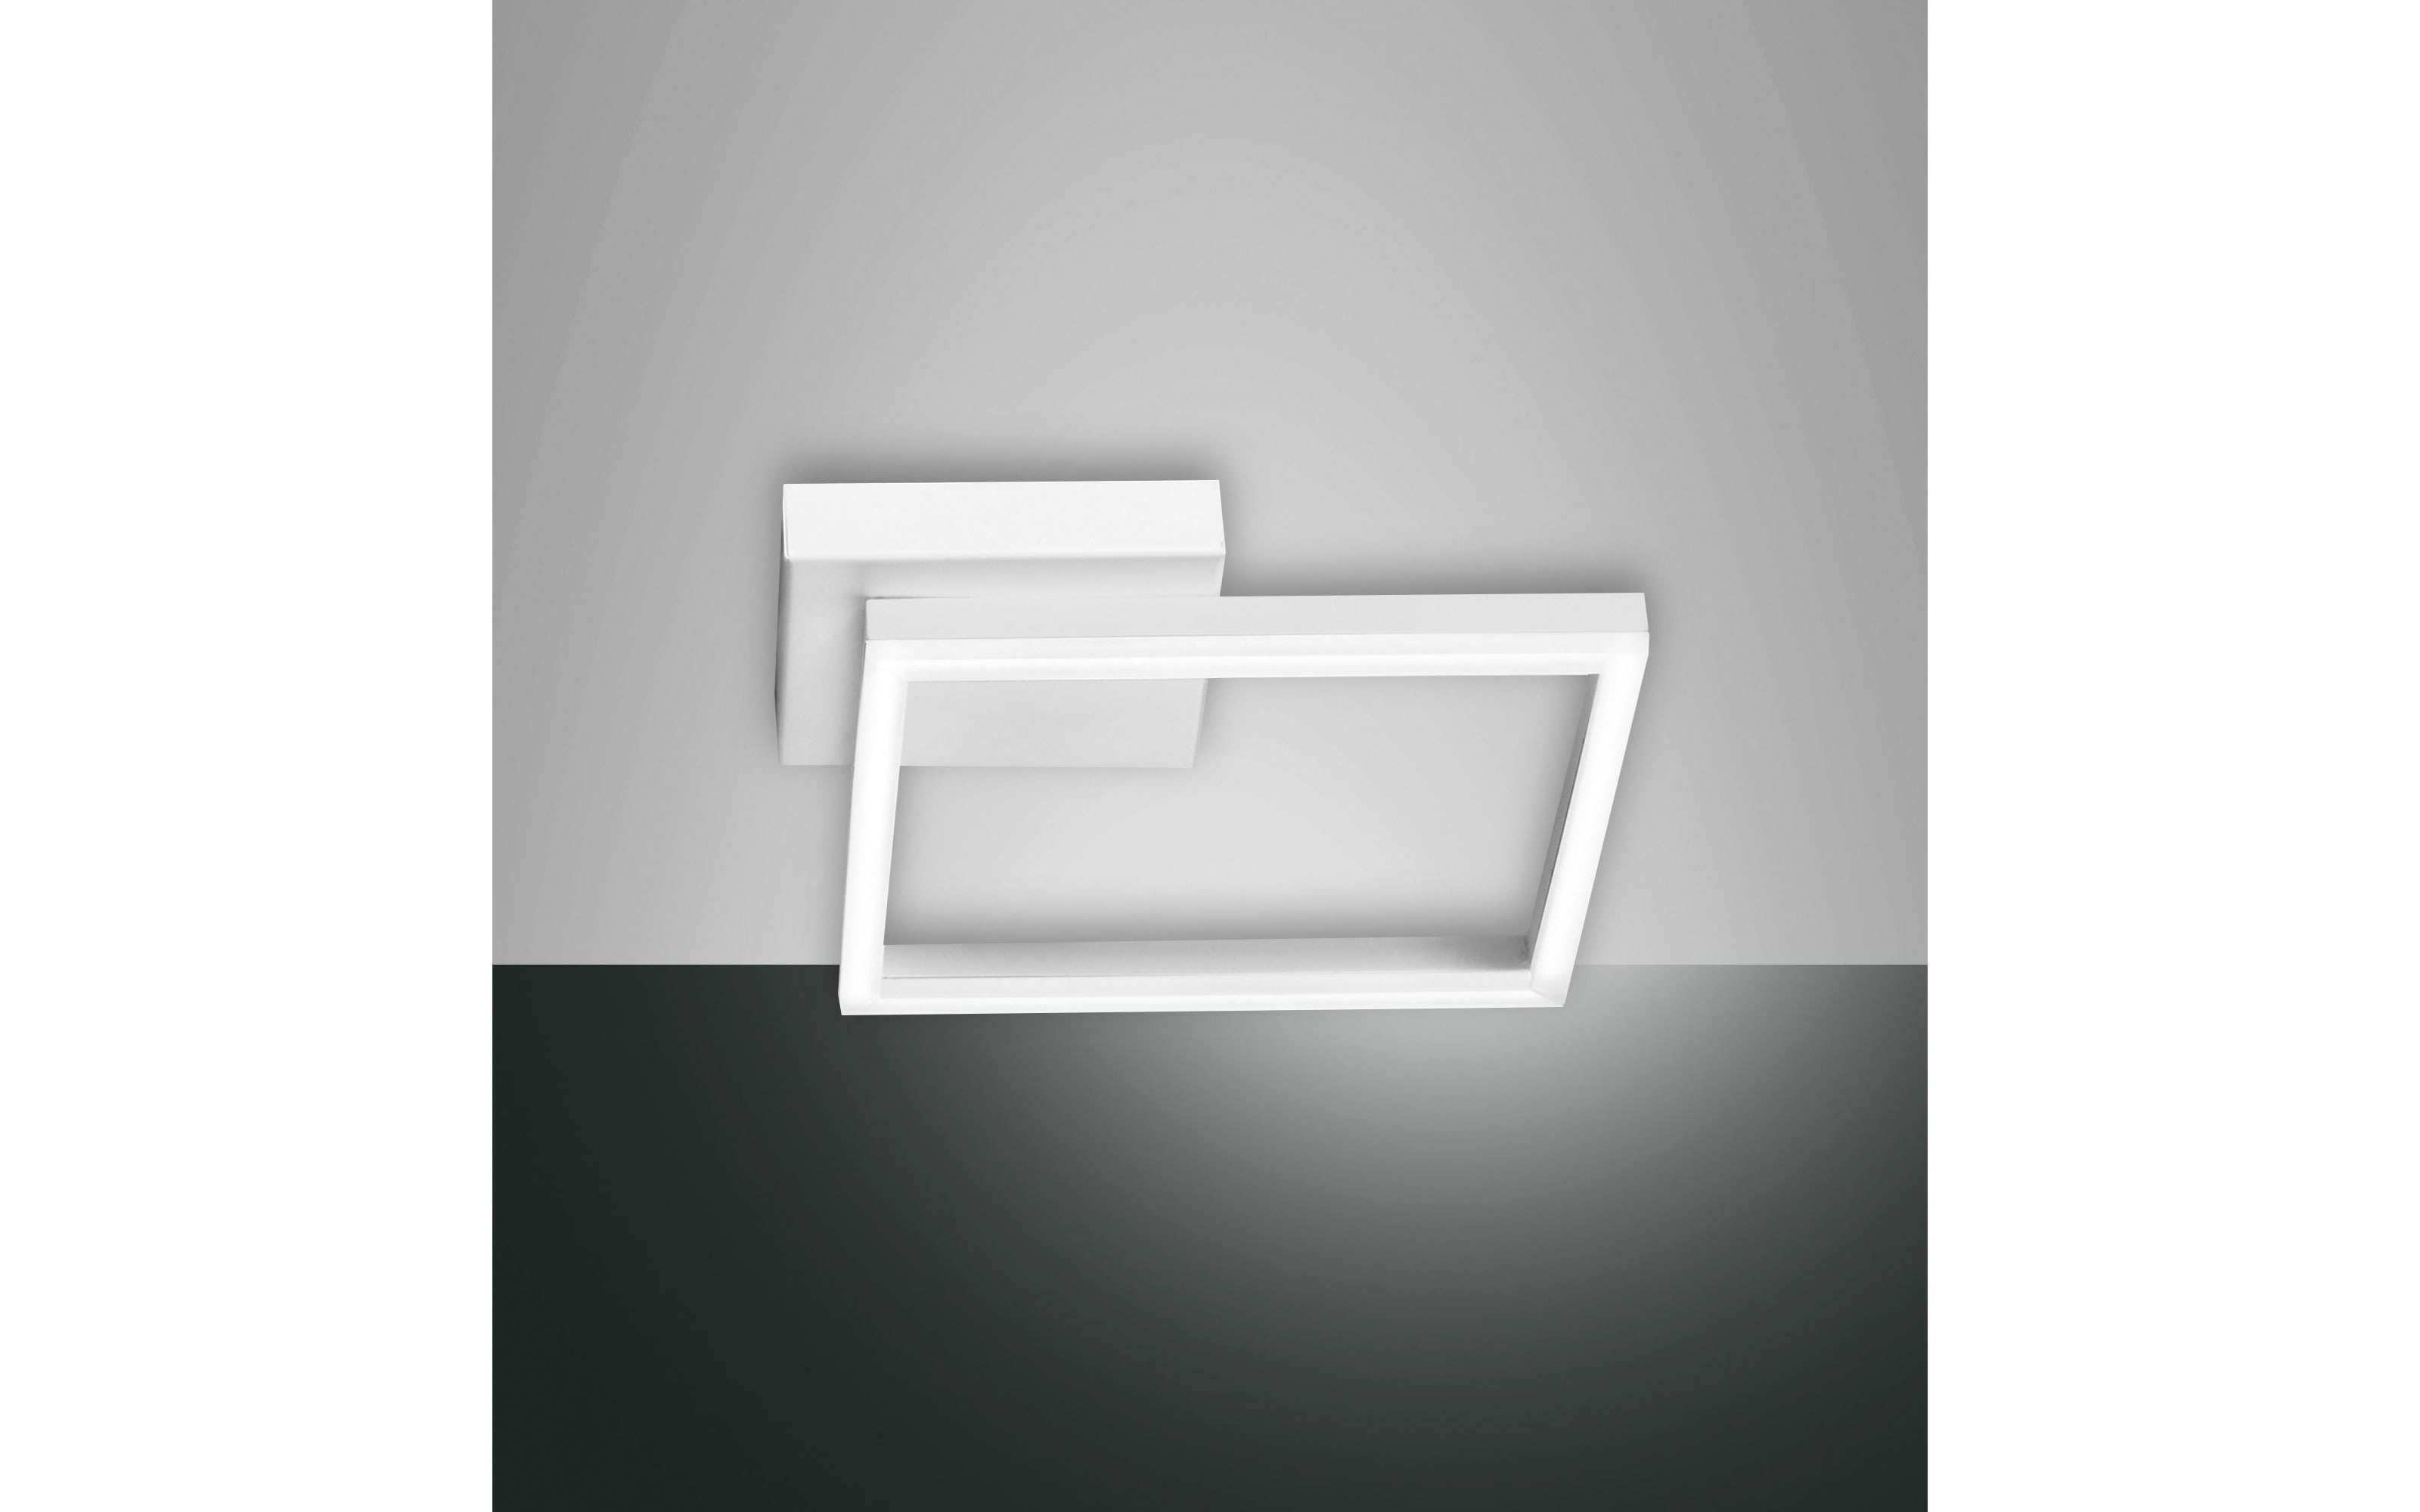 LED-Deckenleuchte Bard in weiß, 15 x 15 cm